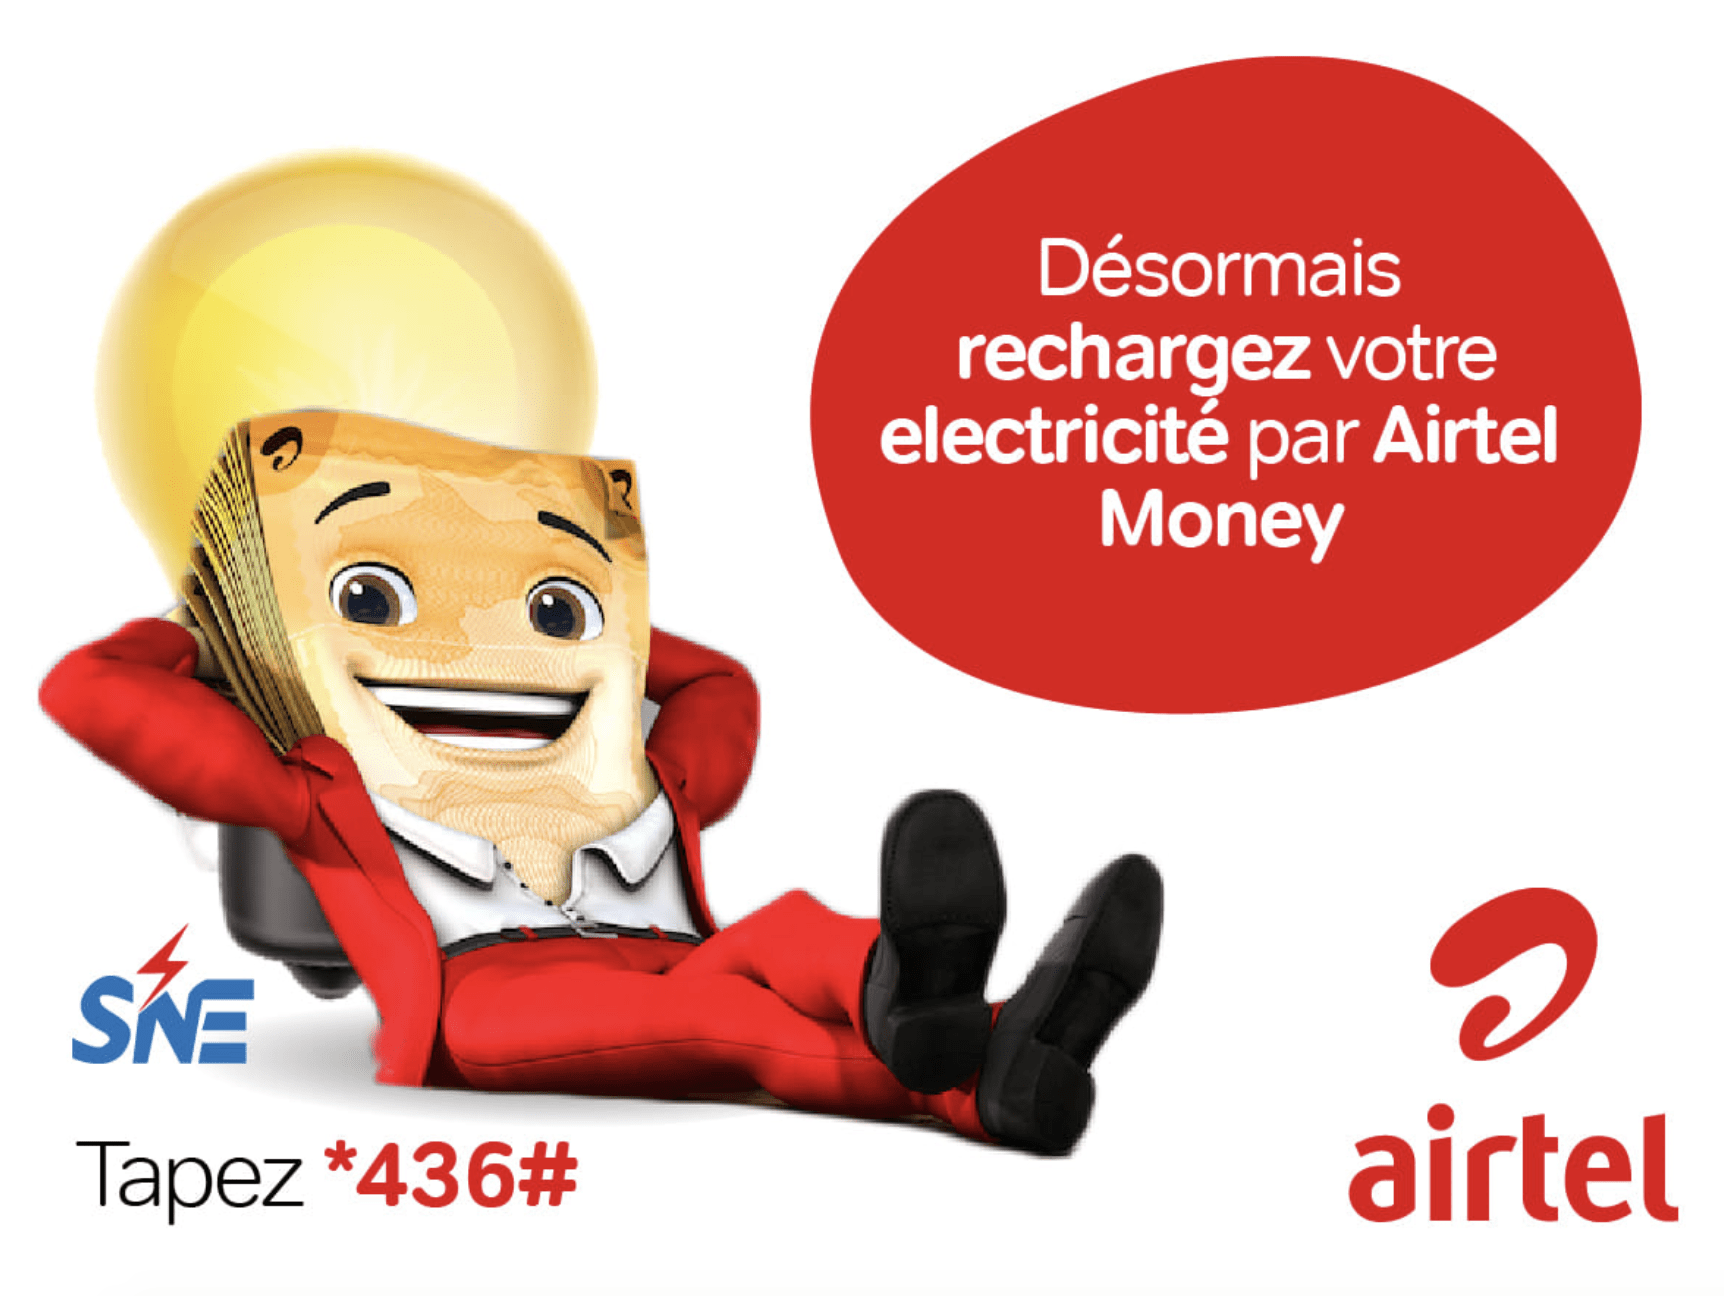 SNE : rétablissement du service de paiement des factures et recharges d’électricité via Airtel Money